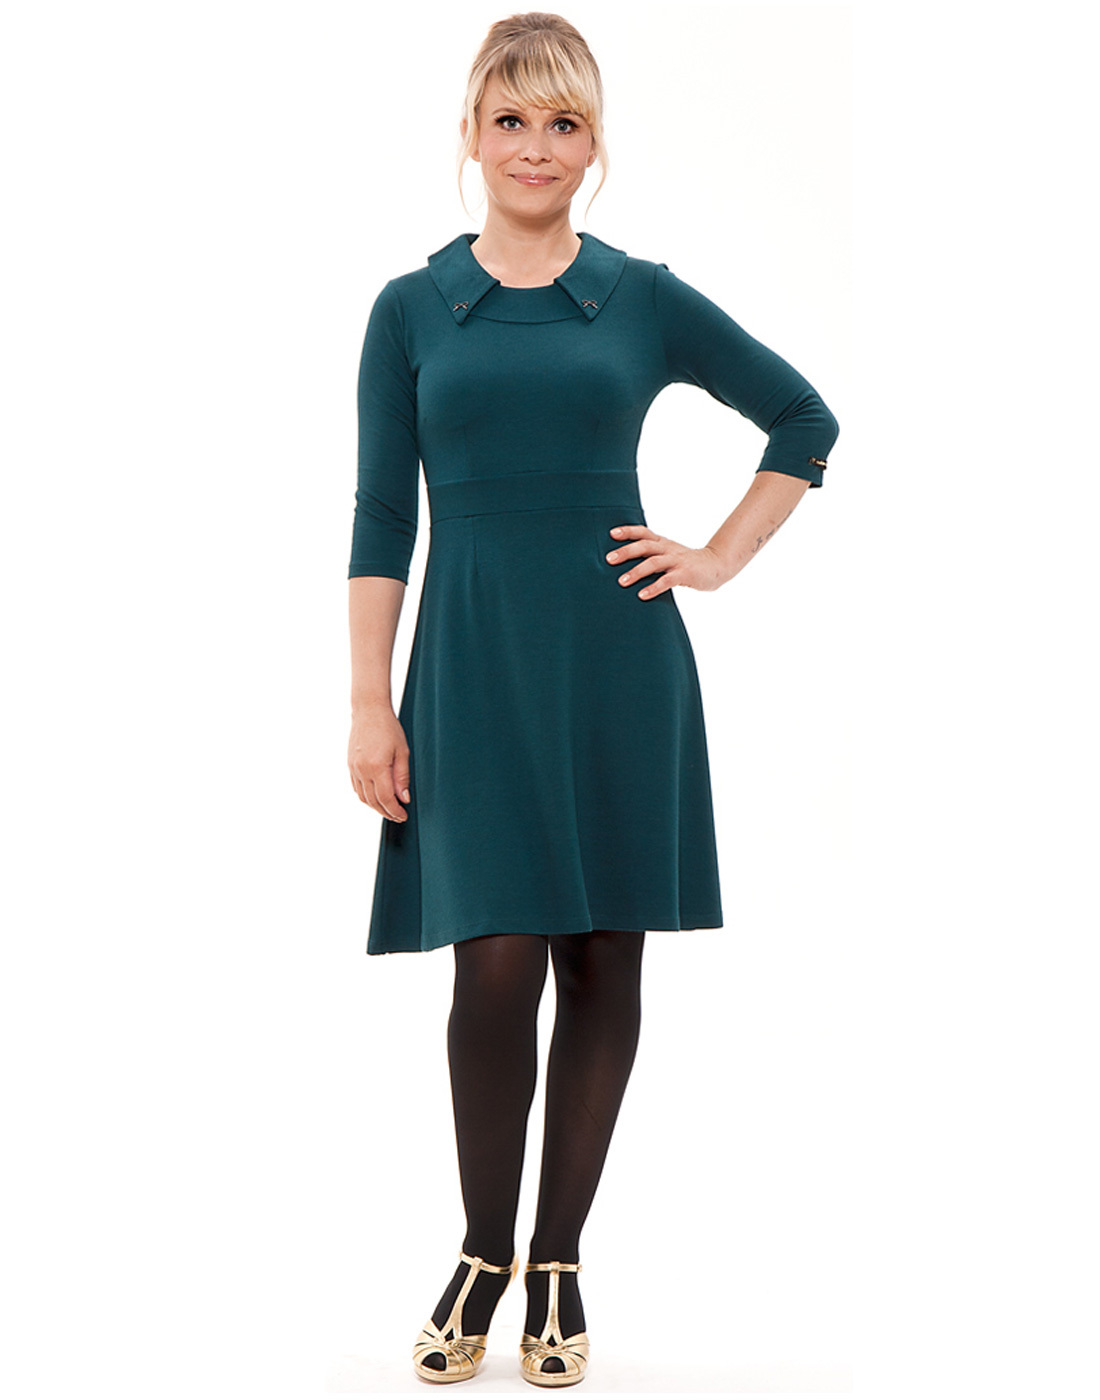 Orlanda MADEMOISELLE YEYE Sixties Mod Collar Dress